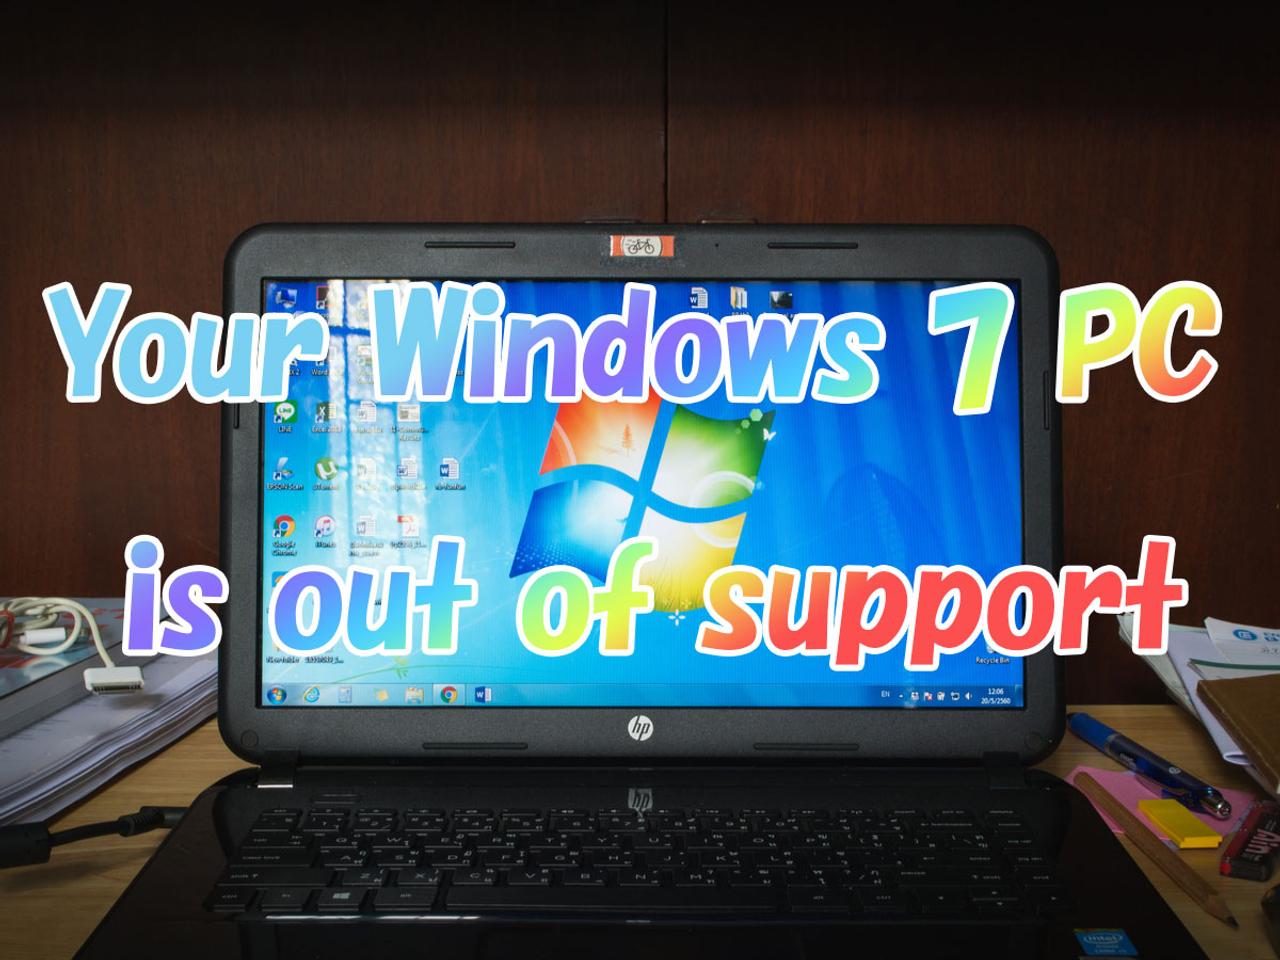 ｢Windows 7のサポート終わったよ｣のメッセージ、全画面で表示されます